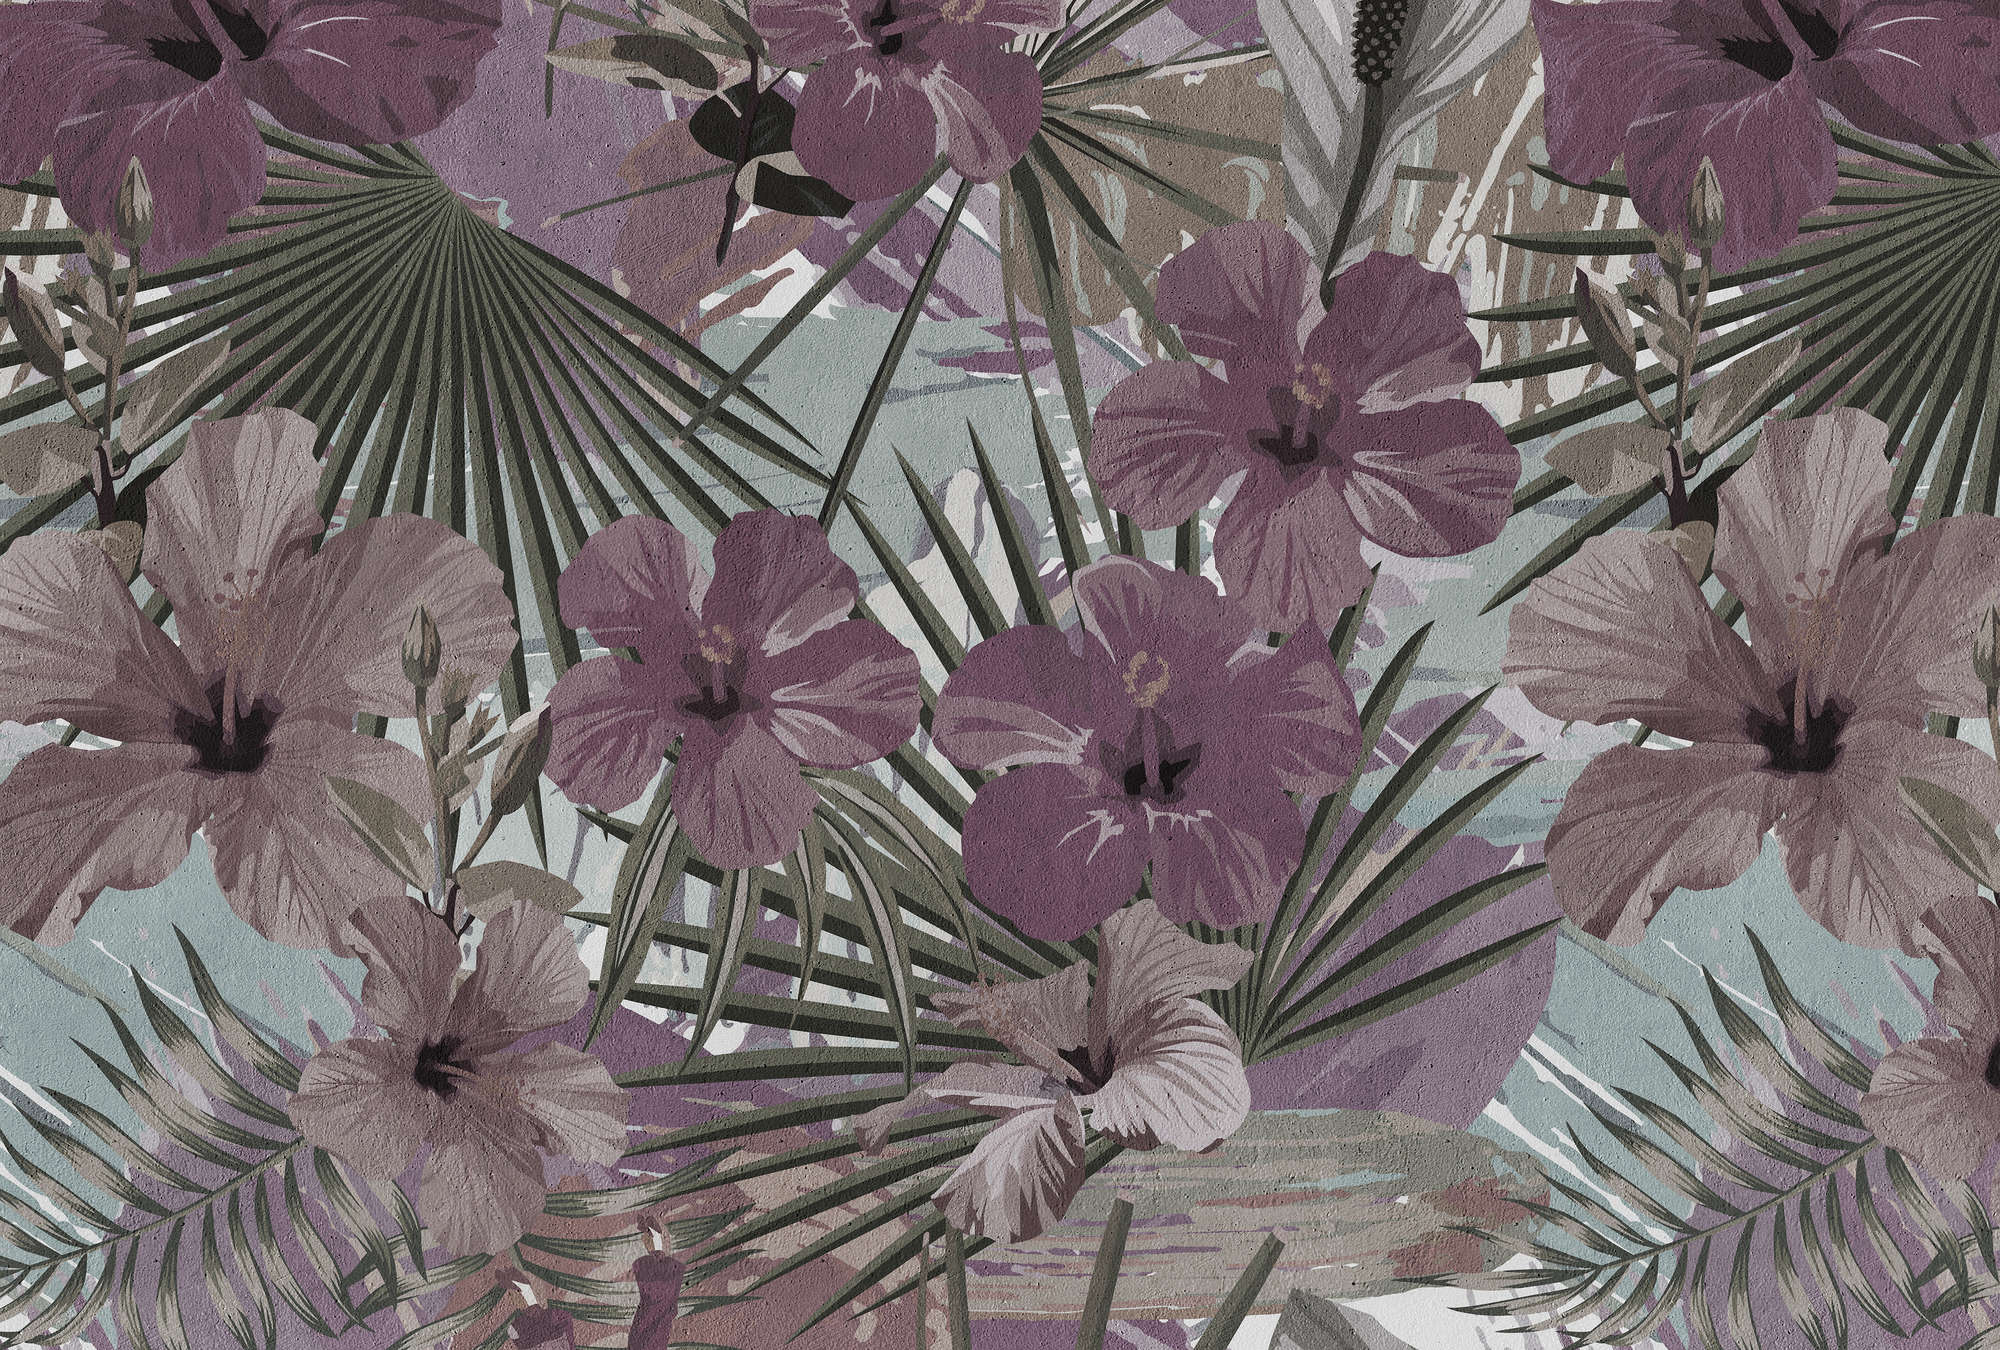             Papier peint jungle palmiers et fleurs - violet, vert
        